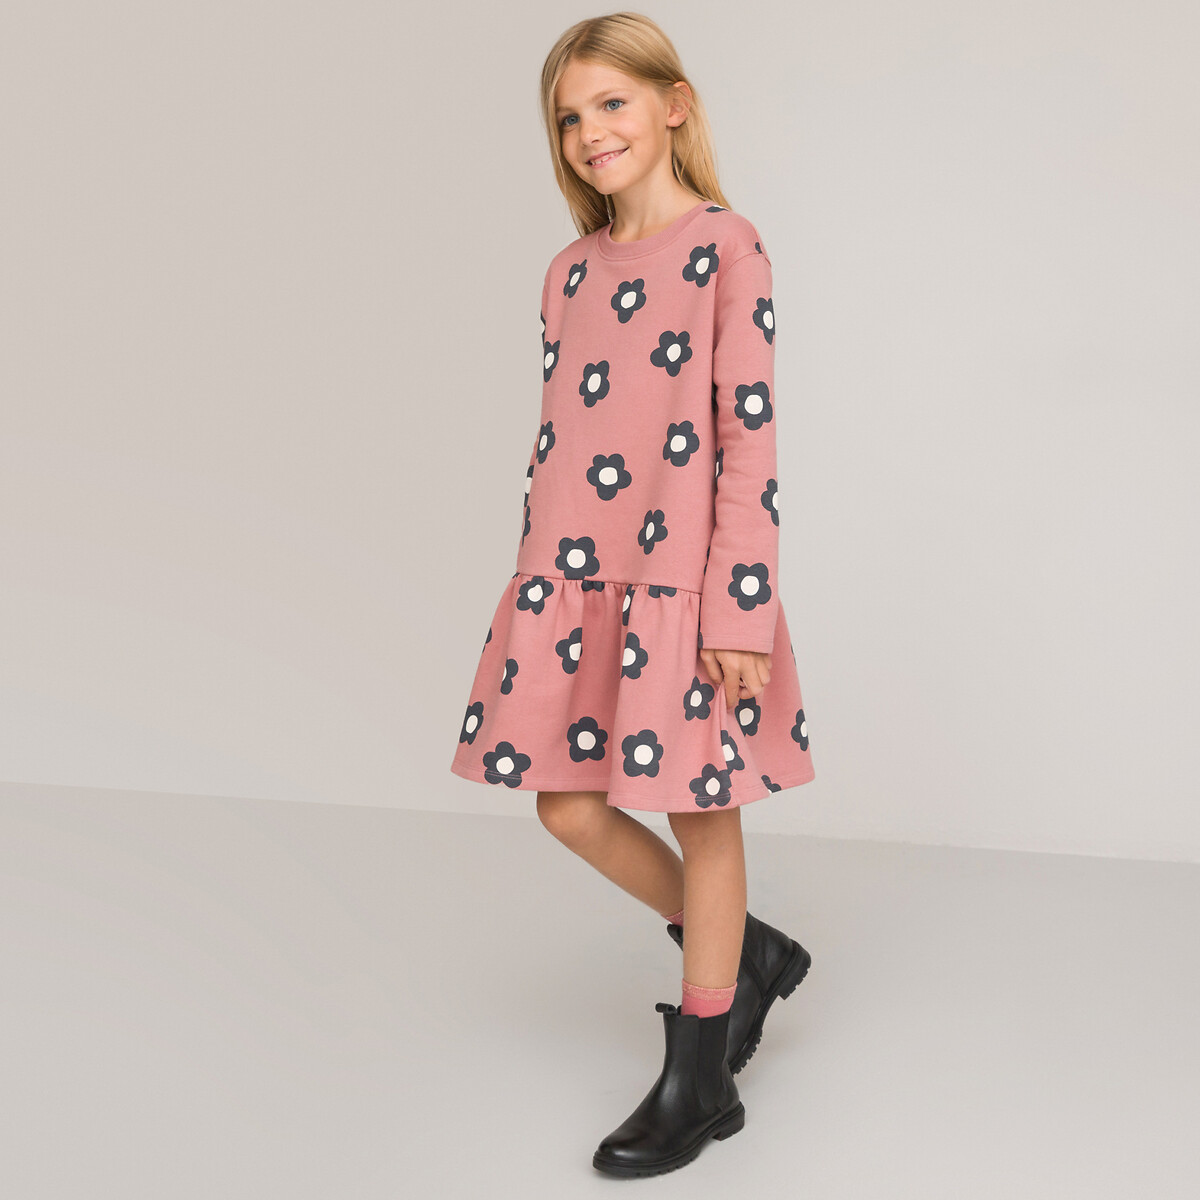 Платье С длинными рукавами из мольтона с цветочным принтом 10 лет - 138 см розовый LaRedoute, размер 10 лет - 138 см